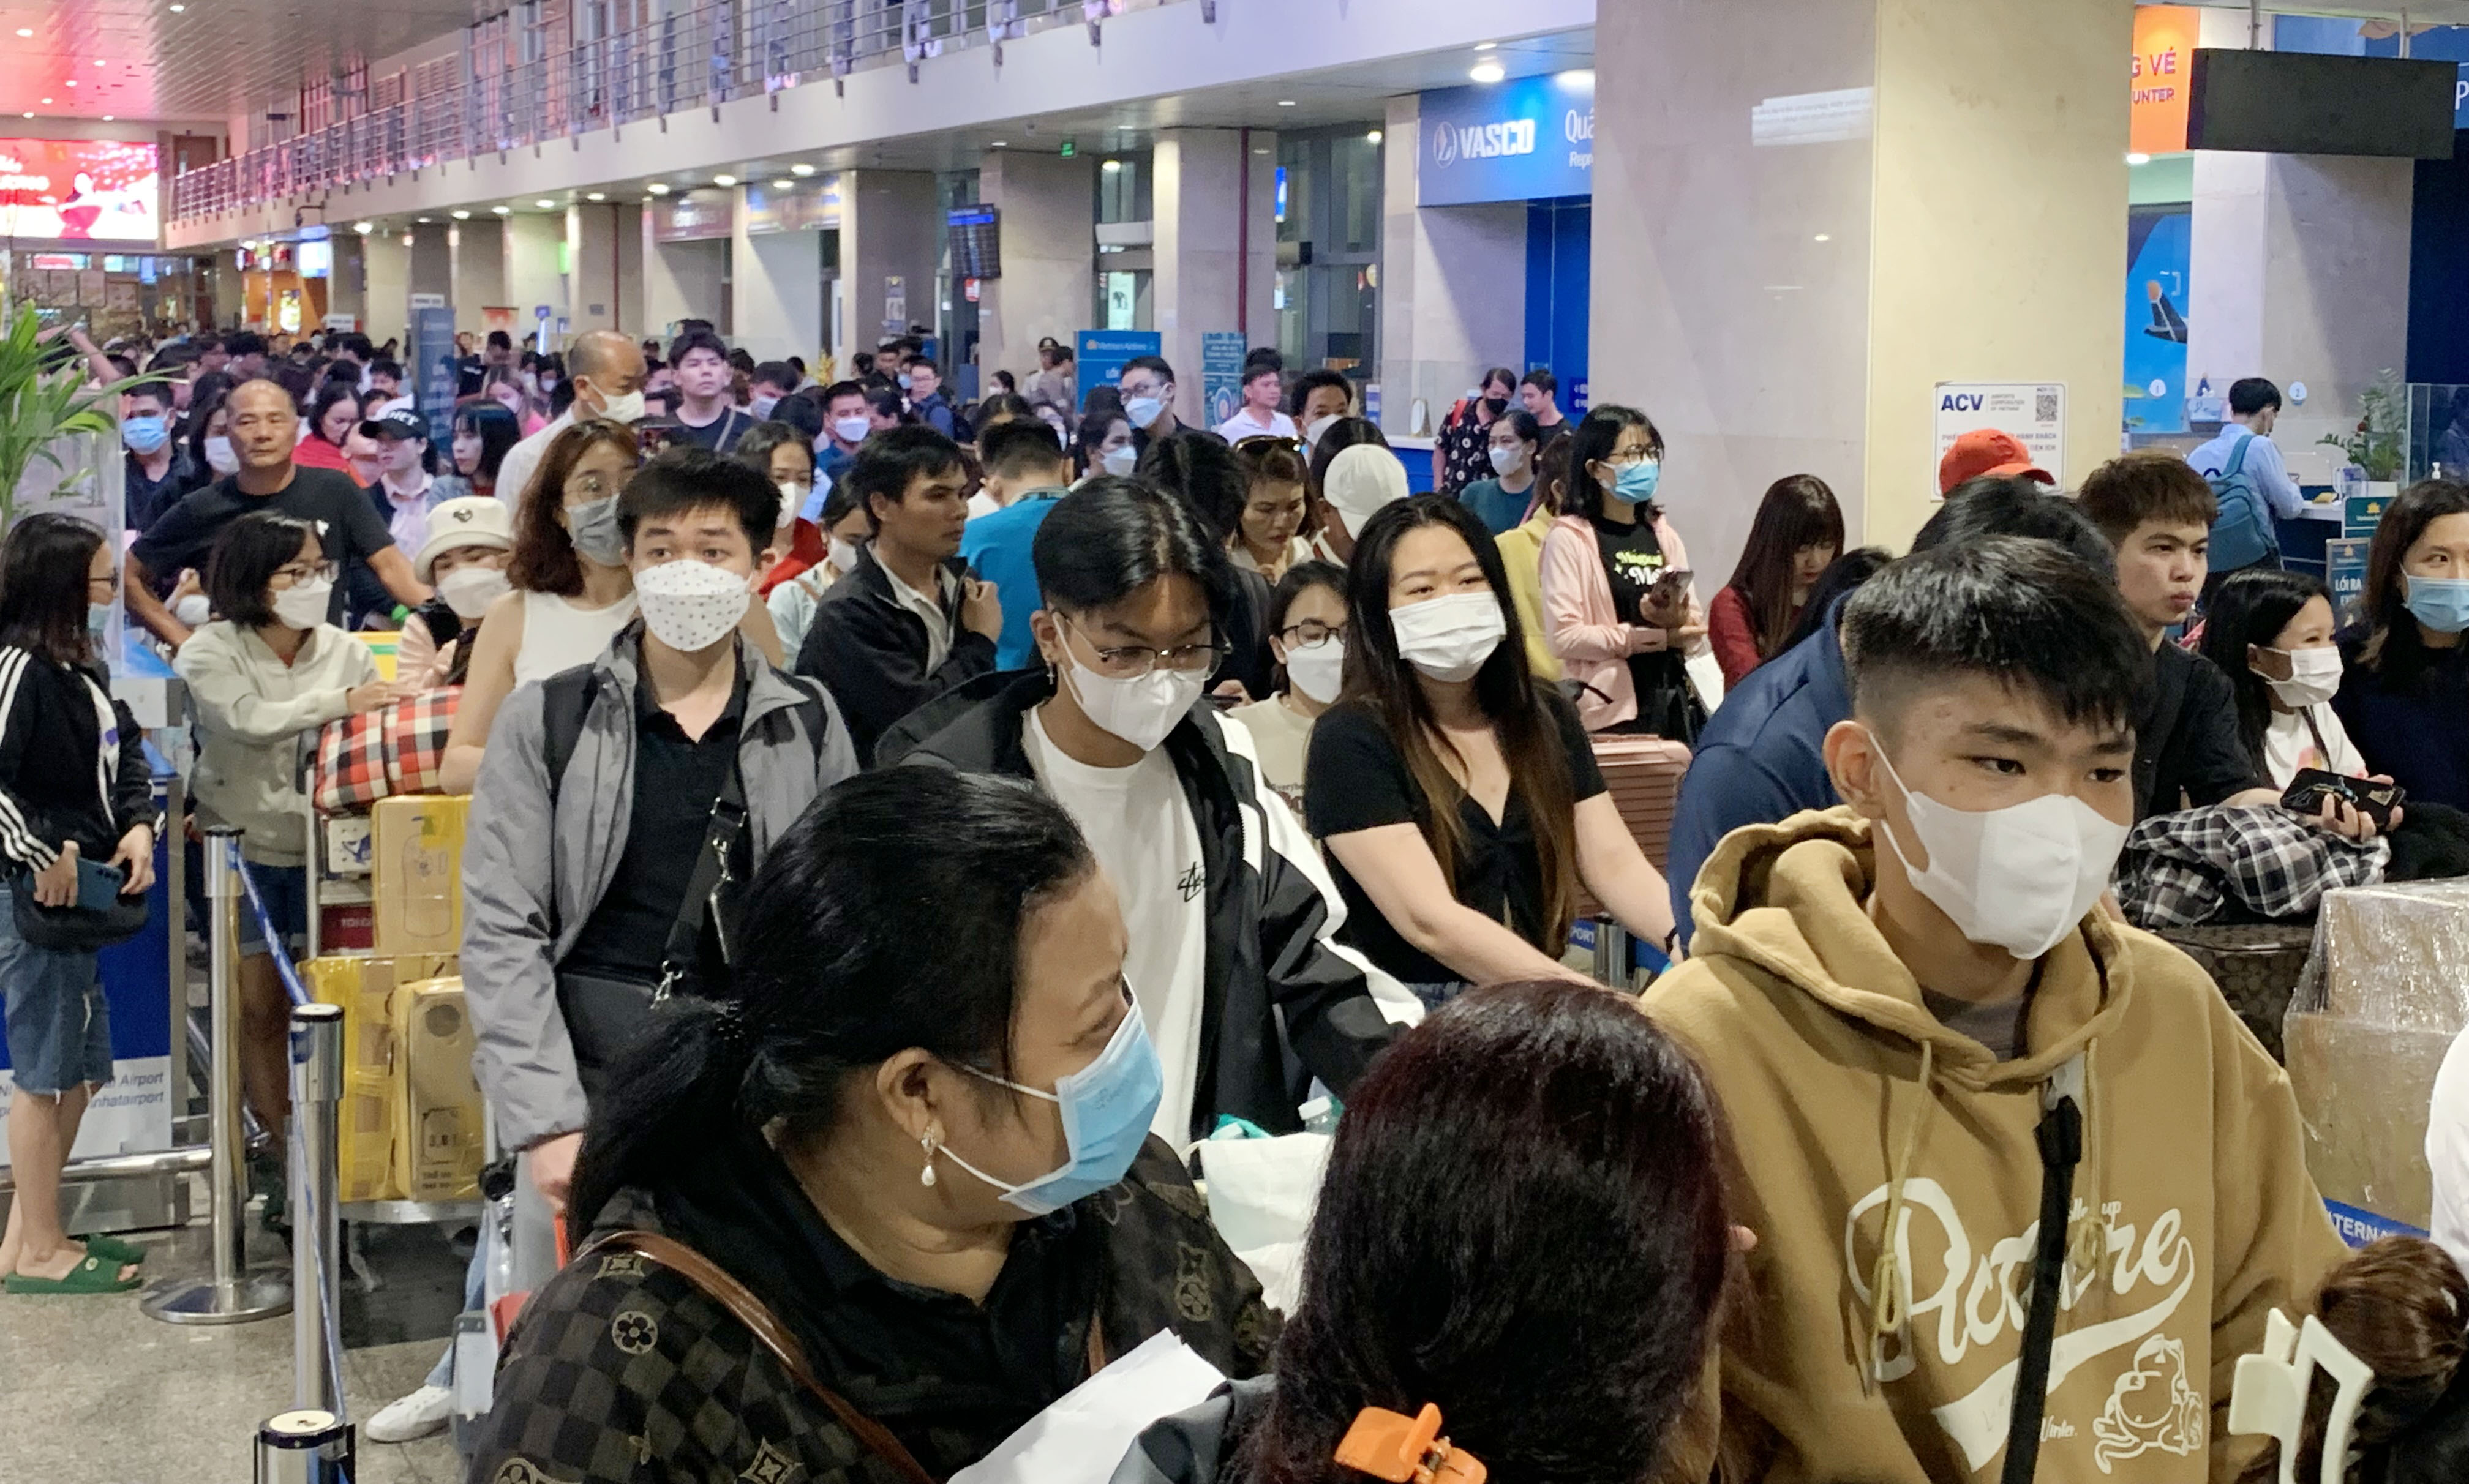 Ga đi quốc nội sân bay Tân Sơn Nhất đông nghẹt người. Sợ trễ chuyến bay, nhiều người có mặt trước giờ khởi hành 2 - 3 tiếng để chủ động xếp hàng, chờ check-in, ký gửi hành lý.